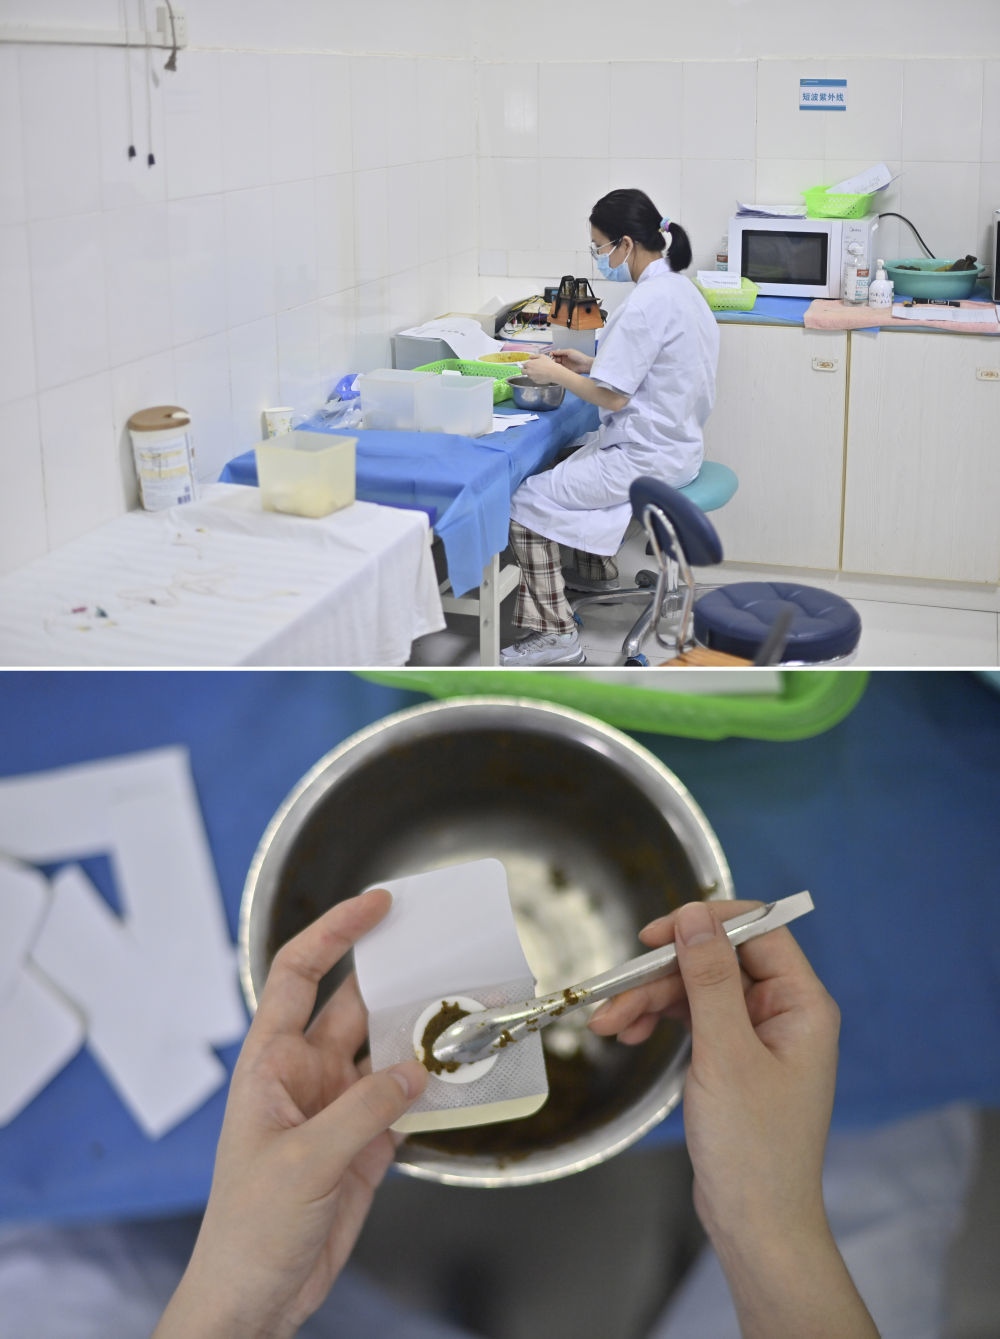 在广西柳州市融安县泗顶镇卫生院，医生蒙汝婷在制作中药膏（4月29日摄）。今年23岁的蒙汝婷，大学毕业后选择到乡镇医院工作。